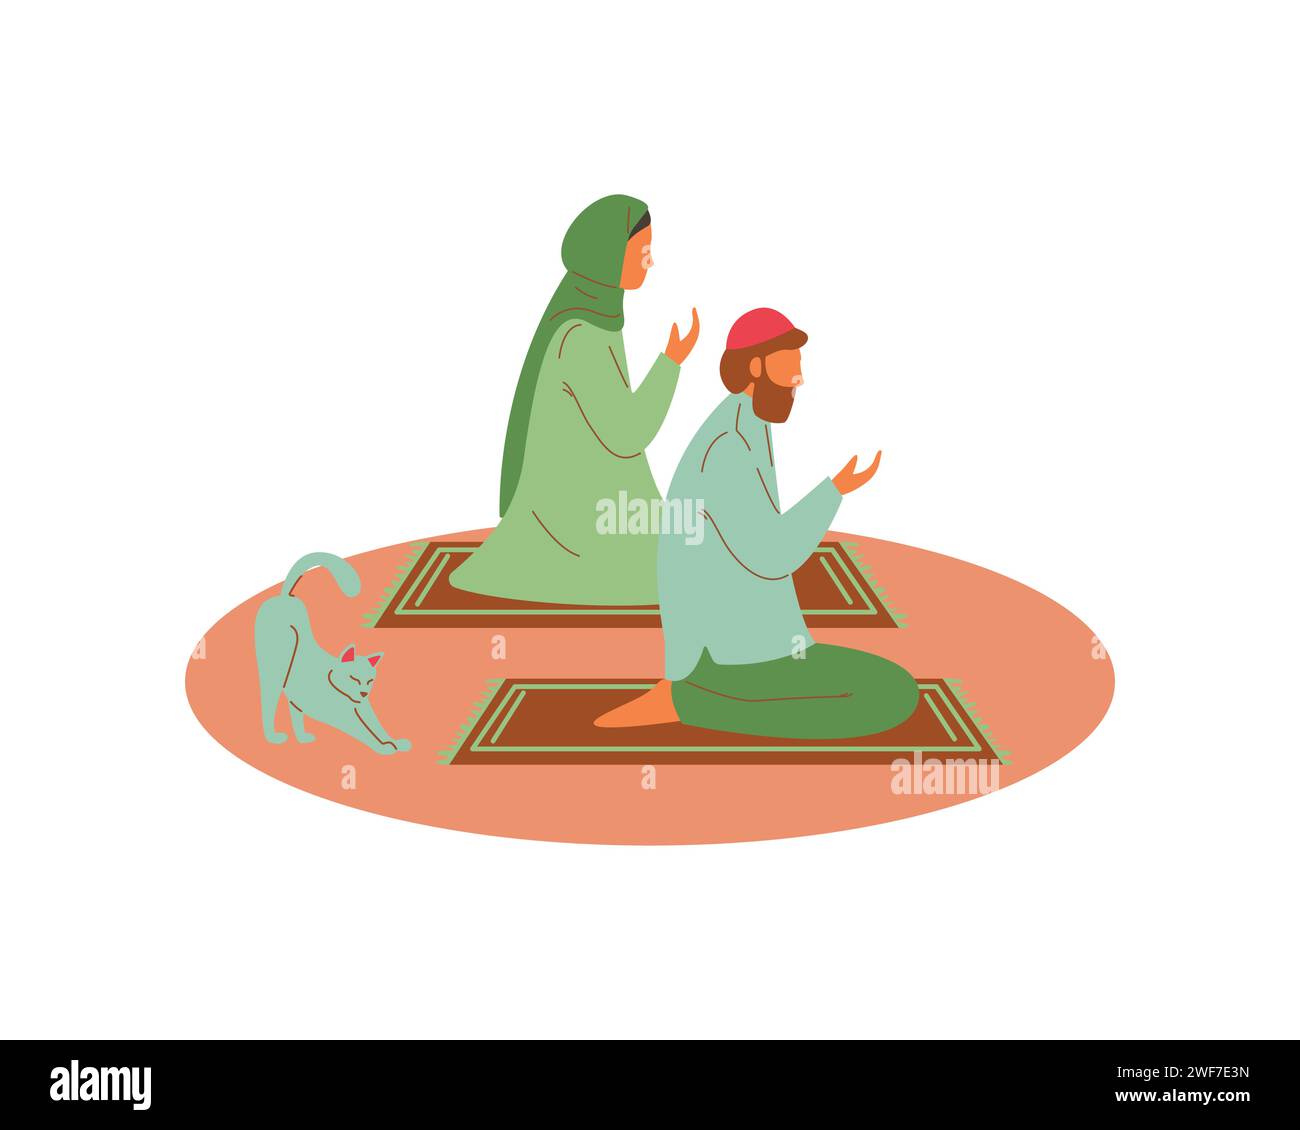 Arabische Frau und Mann beten zu Gott, während eine Katze ihren Körper stärkt. Illustration des Konzepts Tierförderung und Adoption Stock Vektor